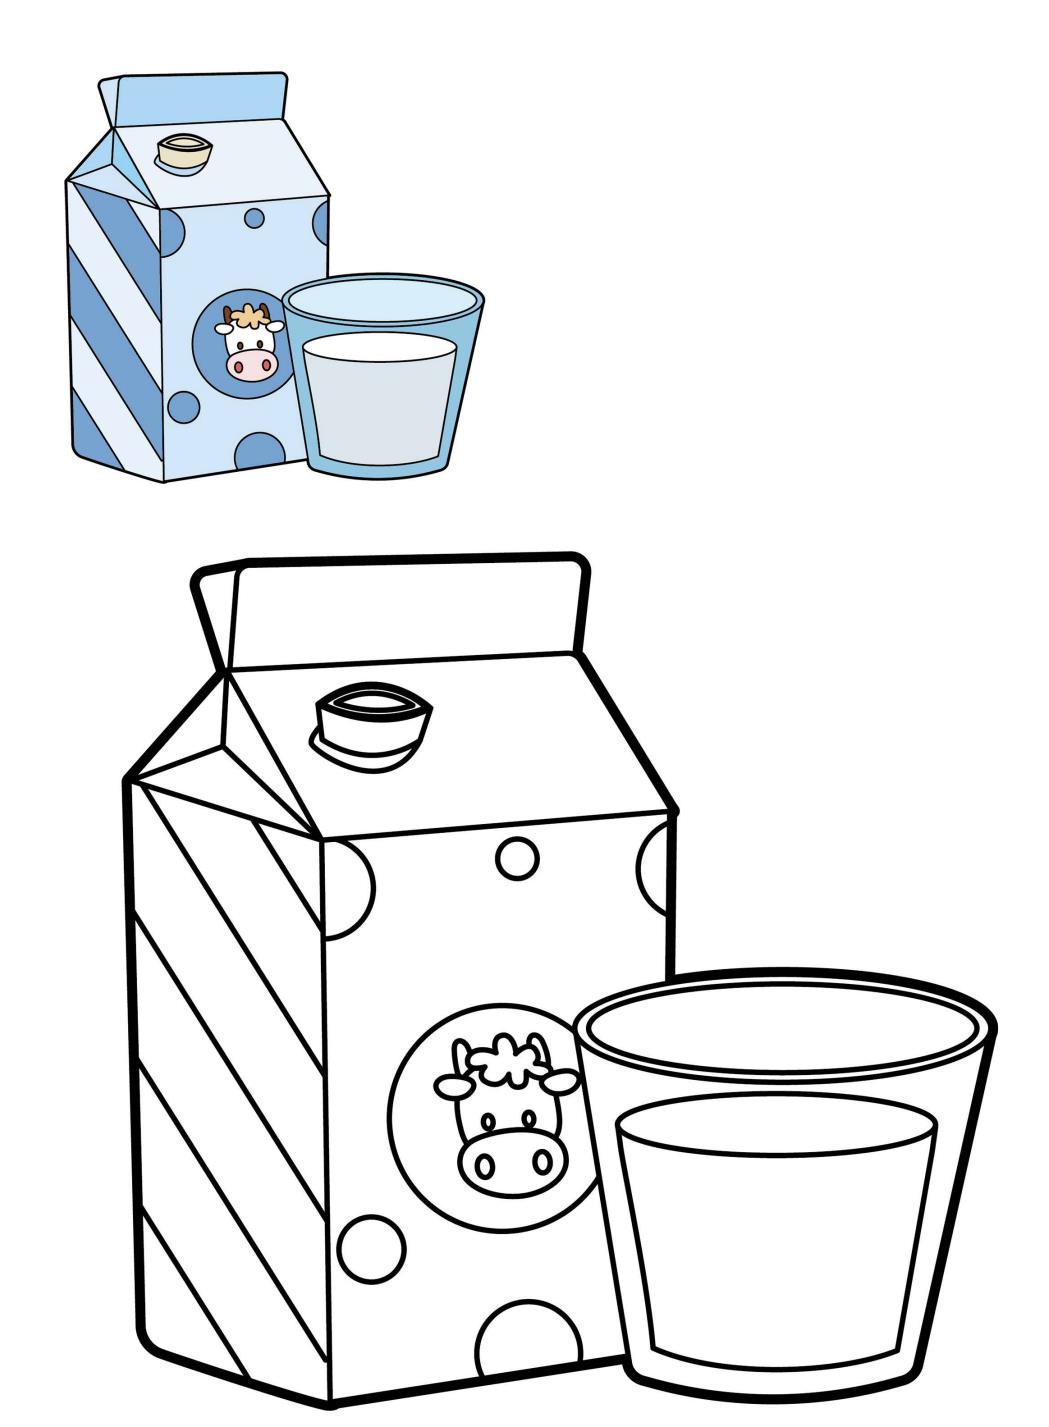 一起画一画丨涂色练习之牛奶瓶